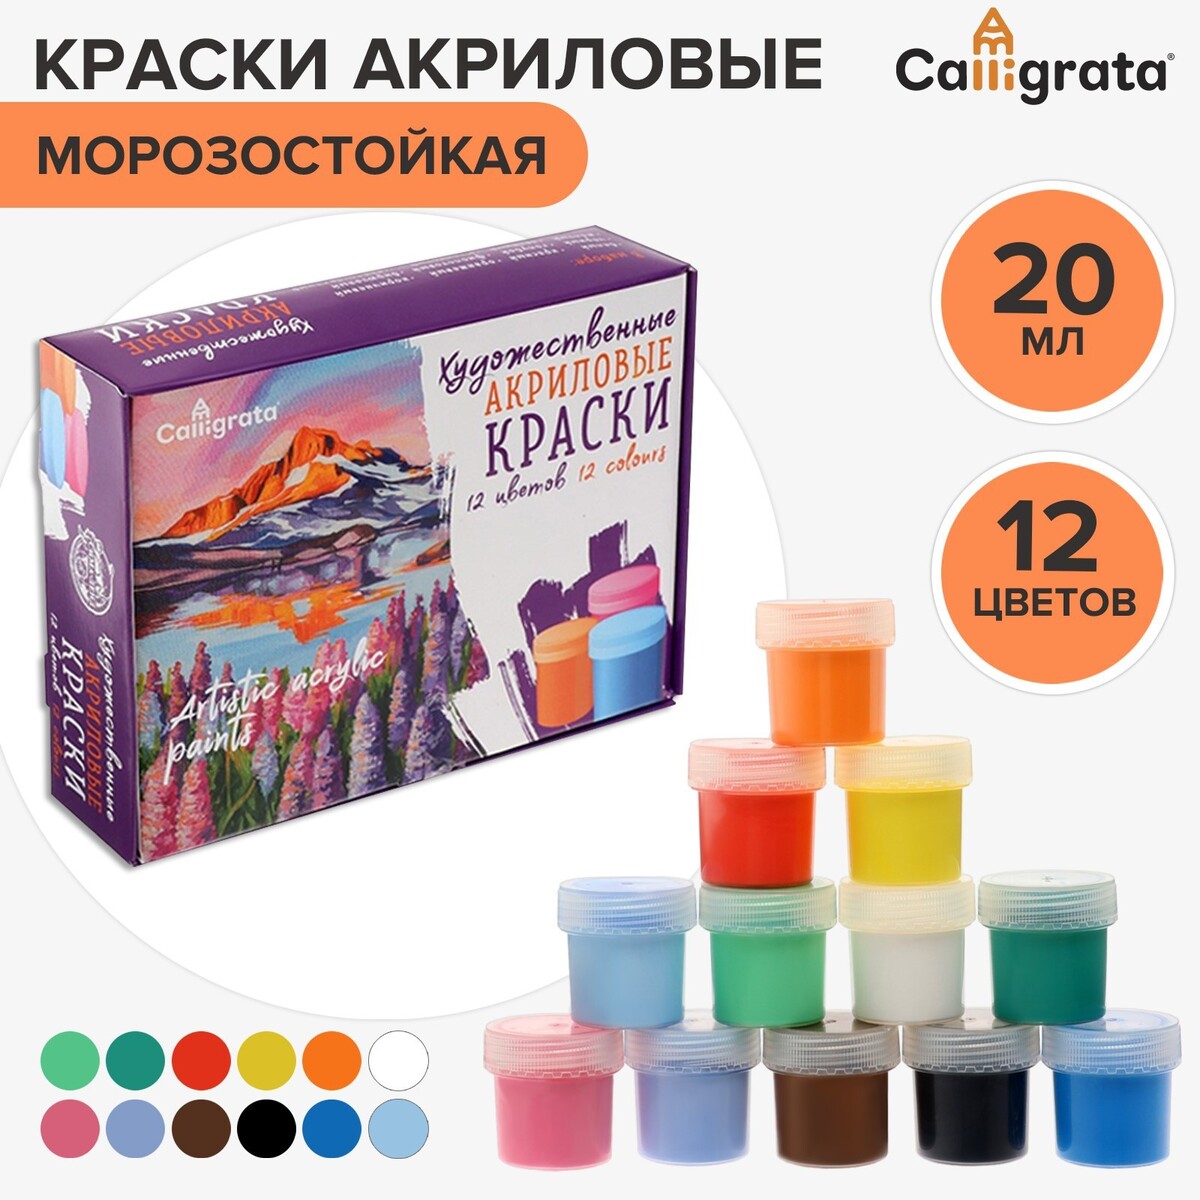 Краска акриловая, набор 12 цветов х 20 мл, calligrata, художественная, морозостойкая, в картонной коробке акриловая краска для моделизма светло оливковая